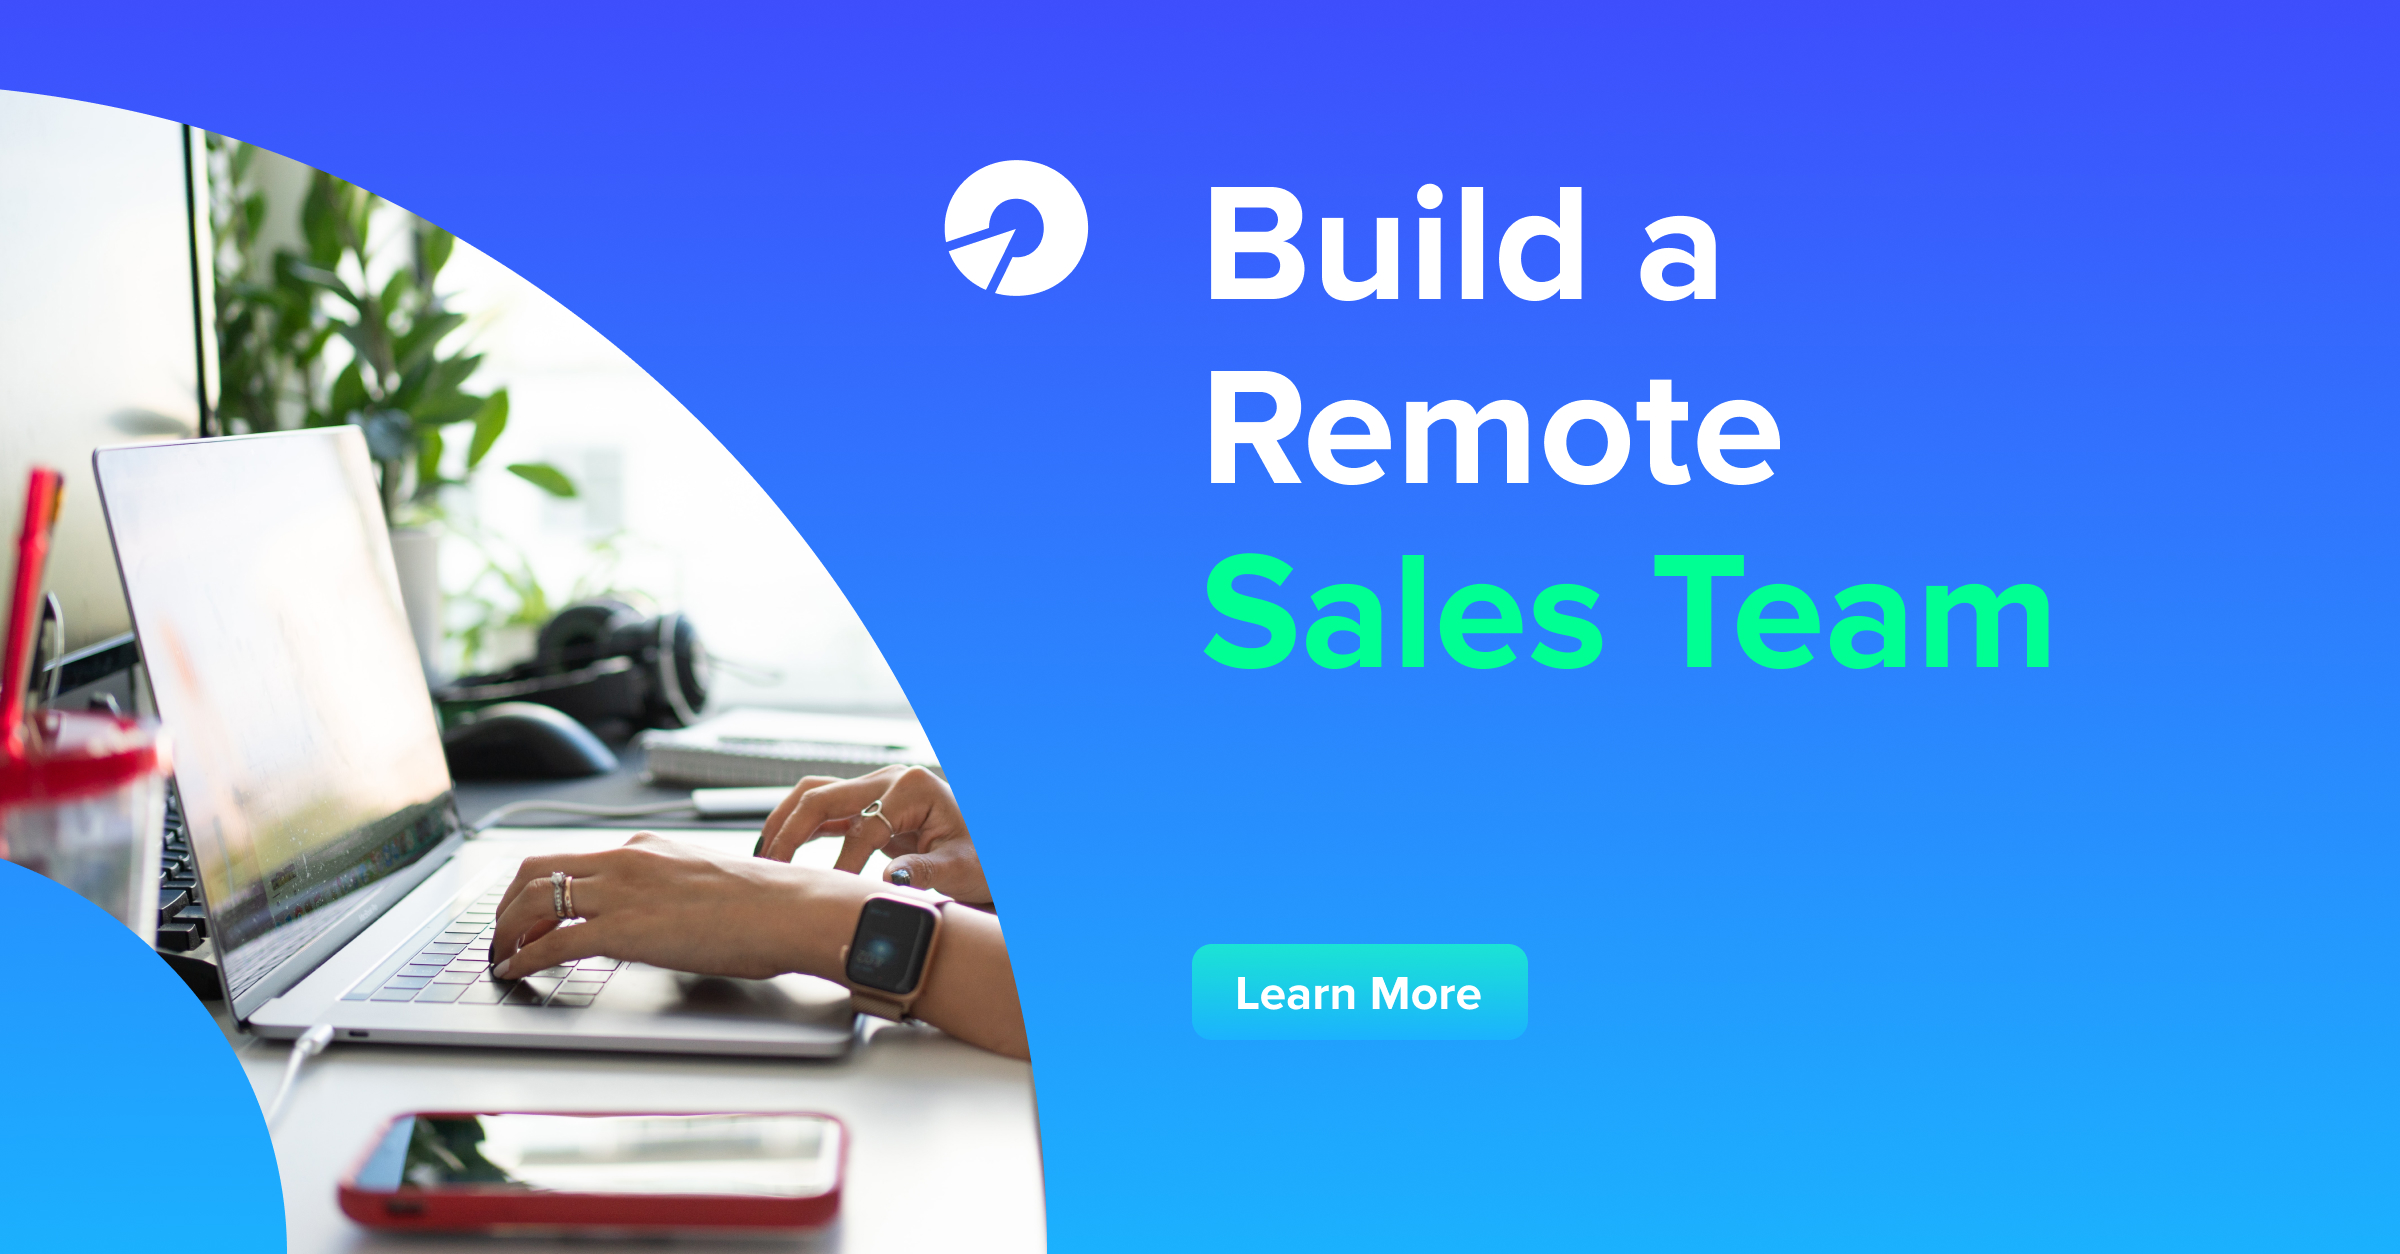 Build a Remote Sales Team